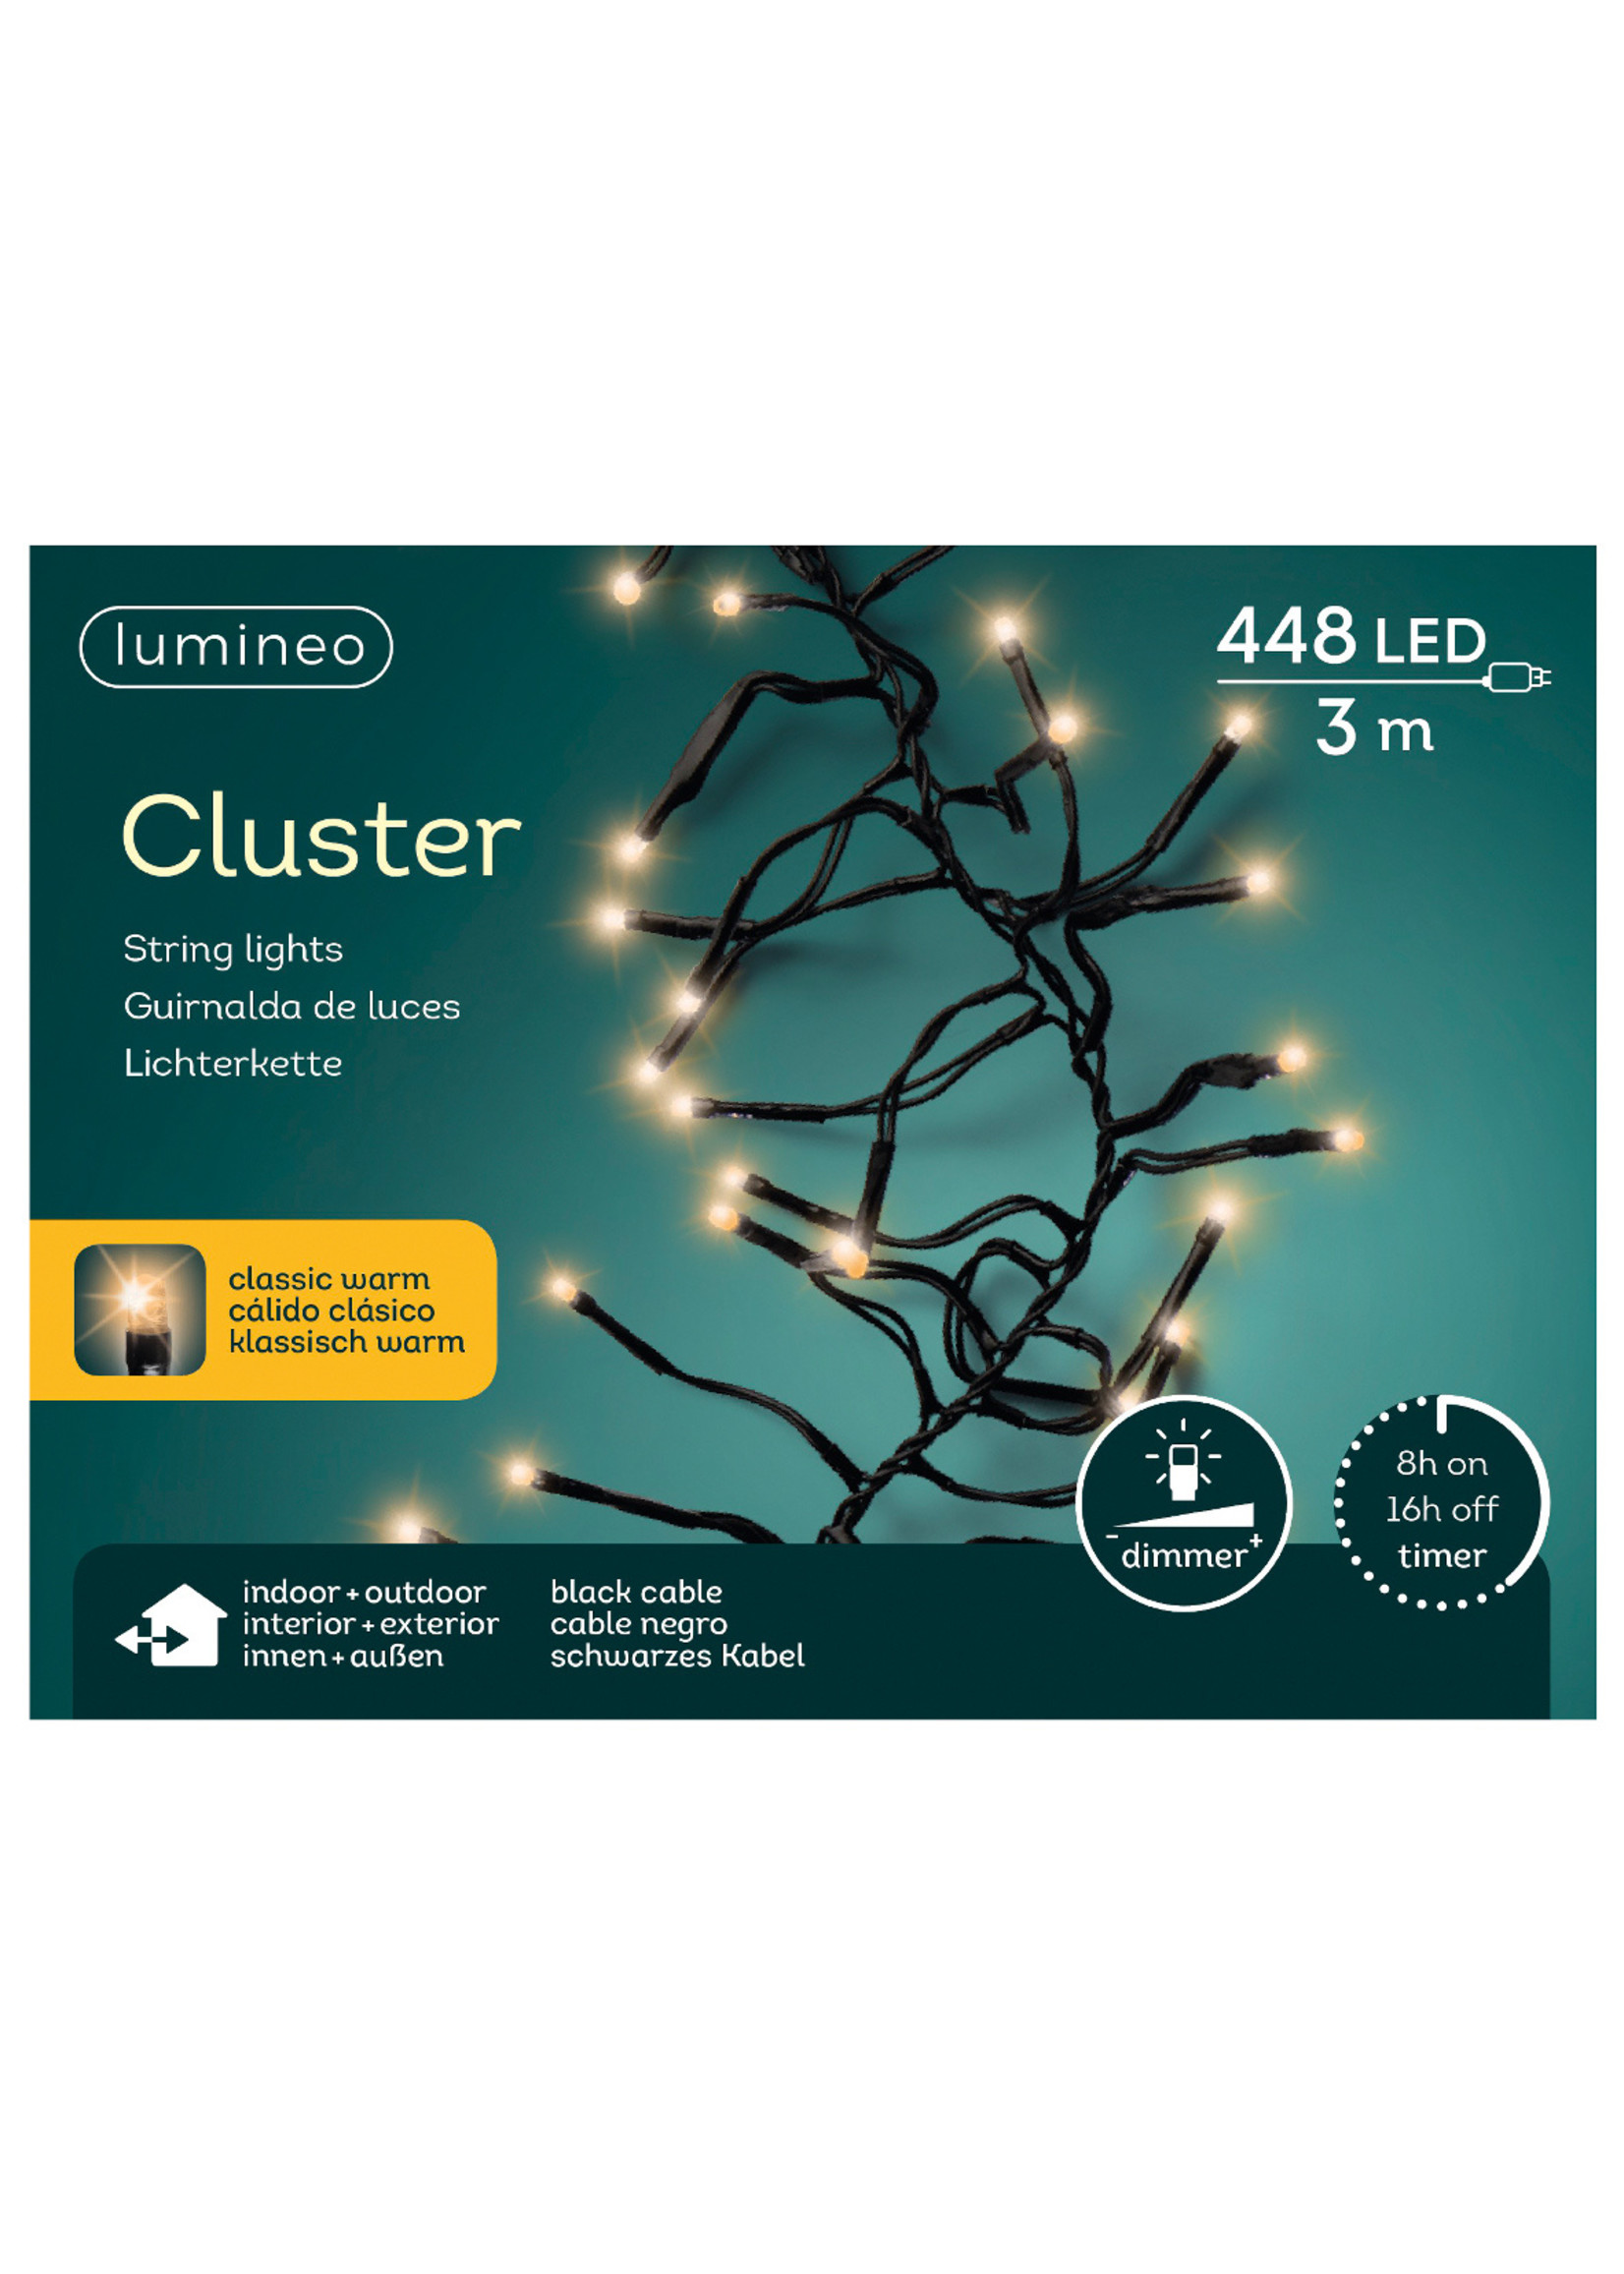 kaemingk LED cluster lights